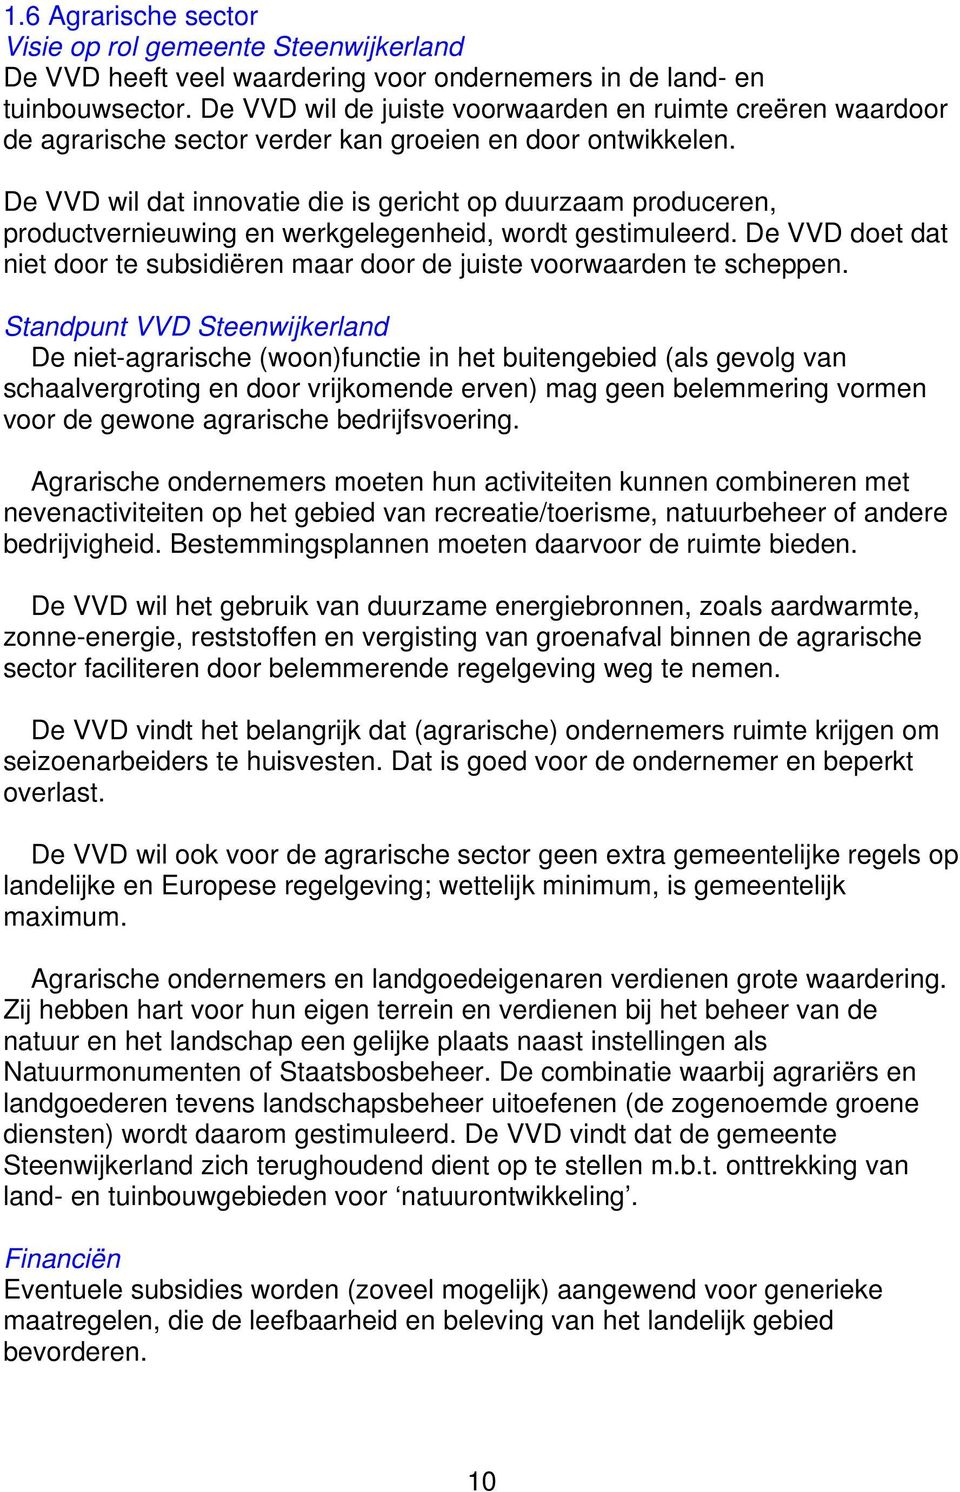 De VVD wil dat innovatie die is gericht op duurzaam produceren, productvernieuwing en werkgelegenheid, wordt gestimuleerd.